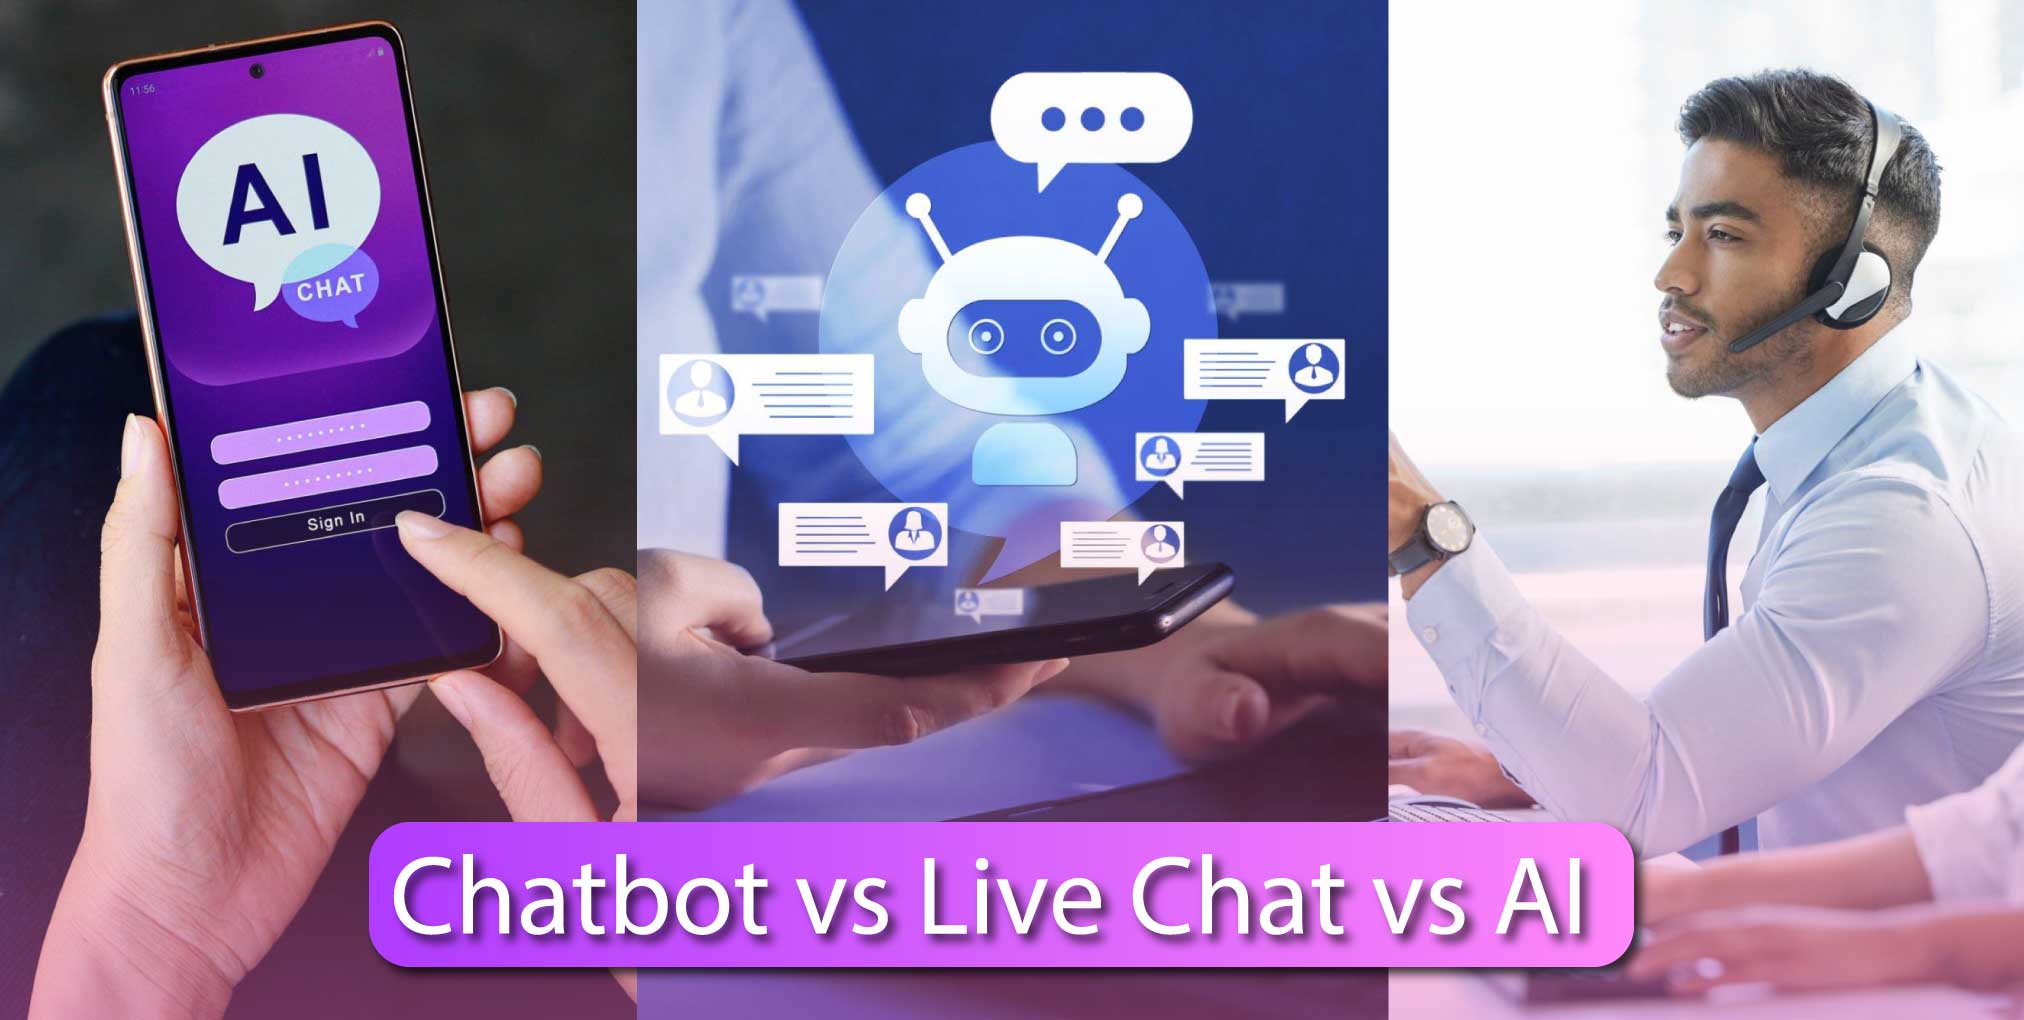 Chatbot vs Live Chat vs AI